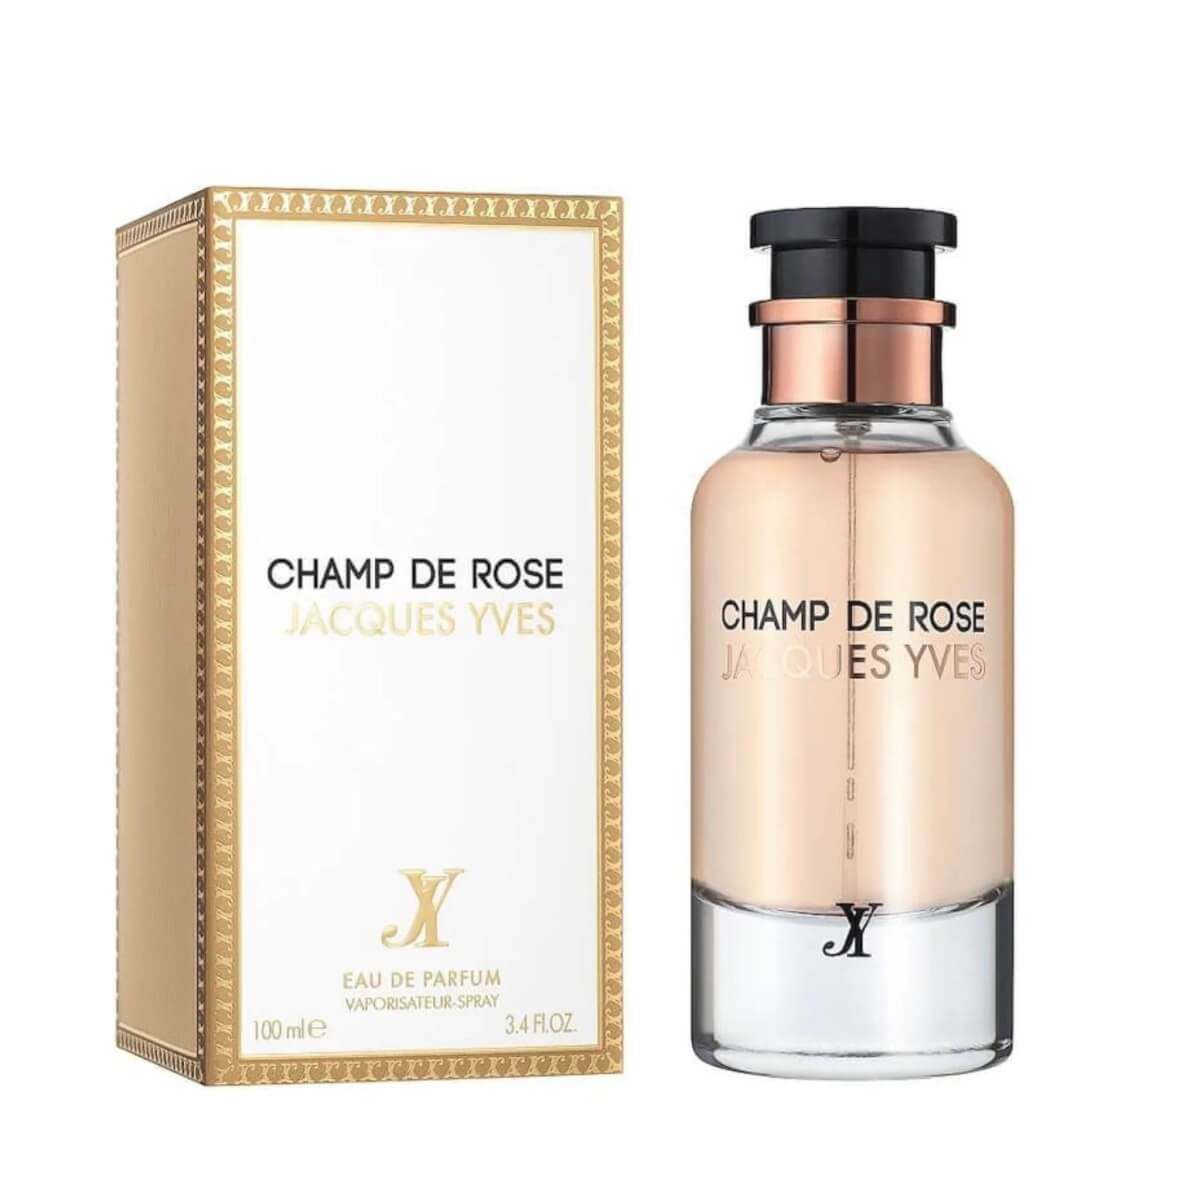 Fragrance World - Champ De Rose Jacques Yves (100ml)